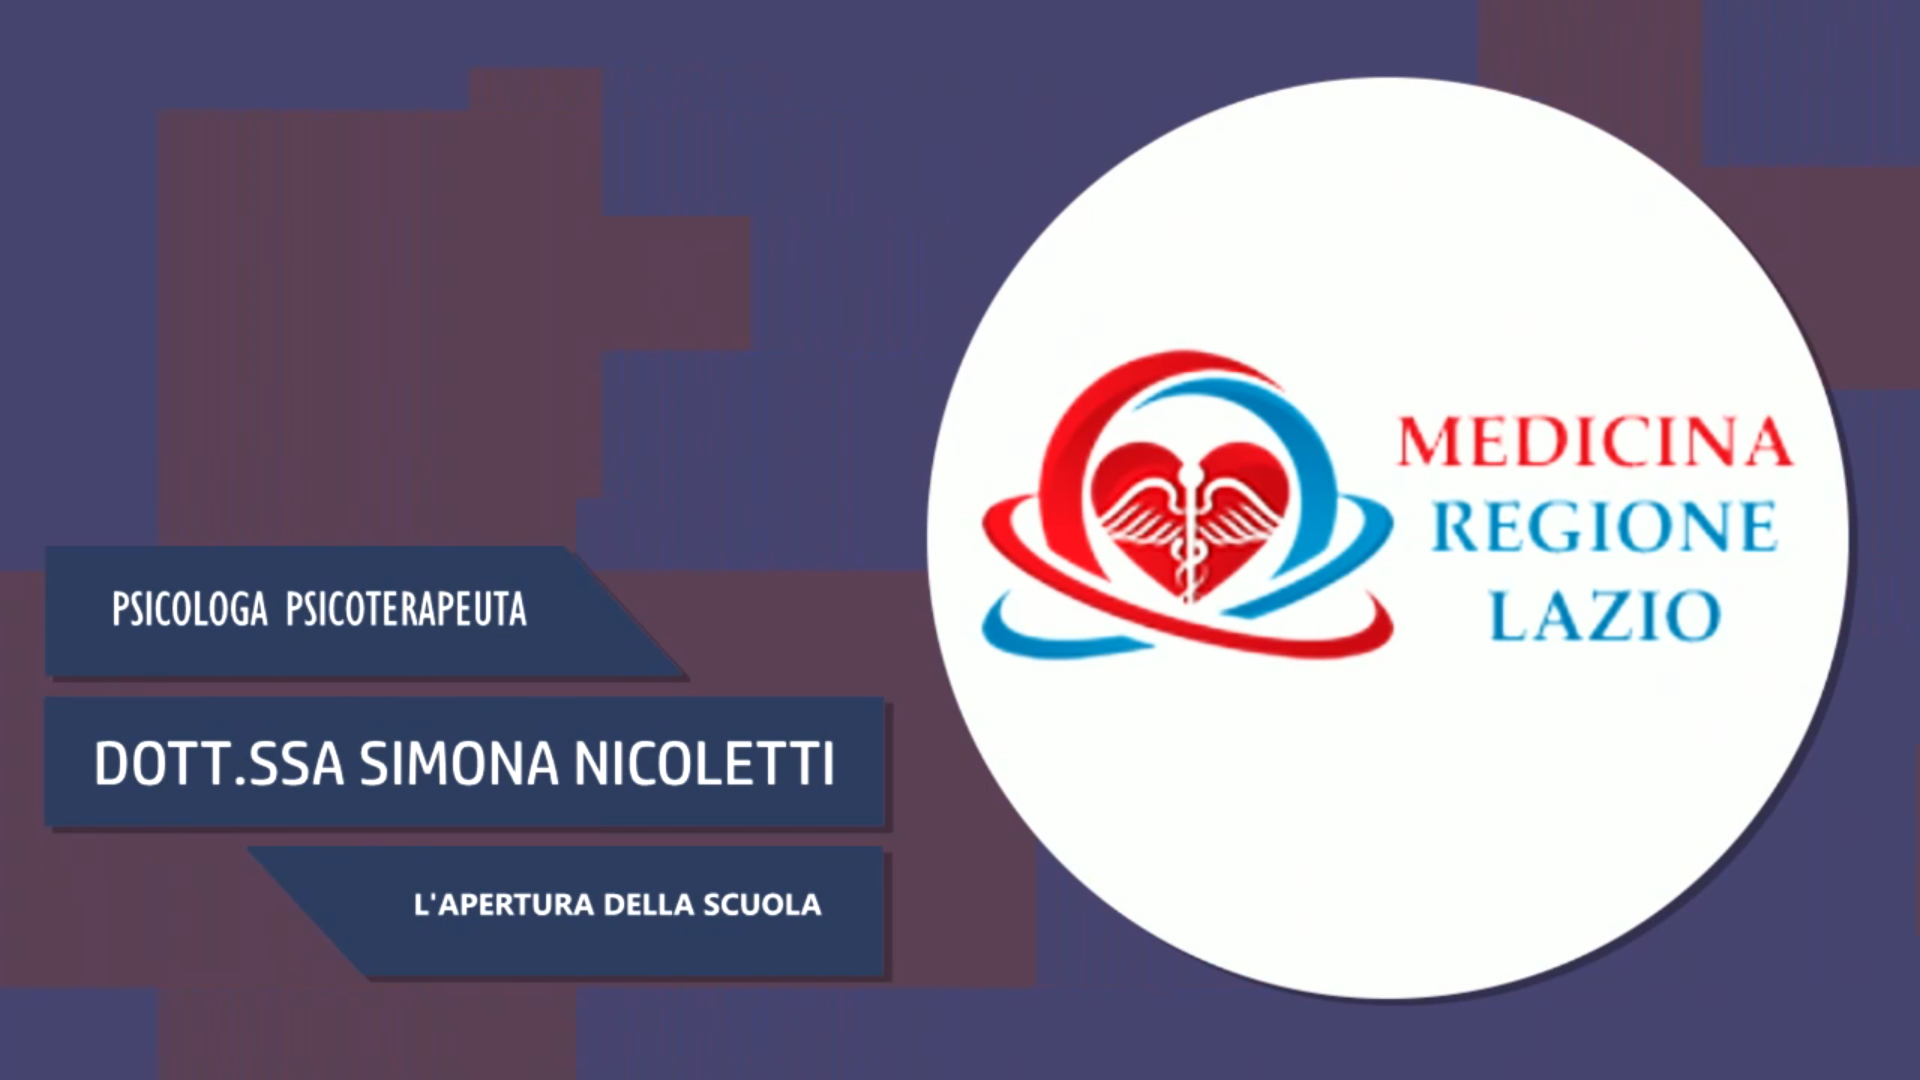 Intervista alla Dott.ssa Simona Nicoletti – L’apertura della scuola